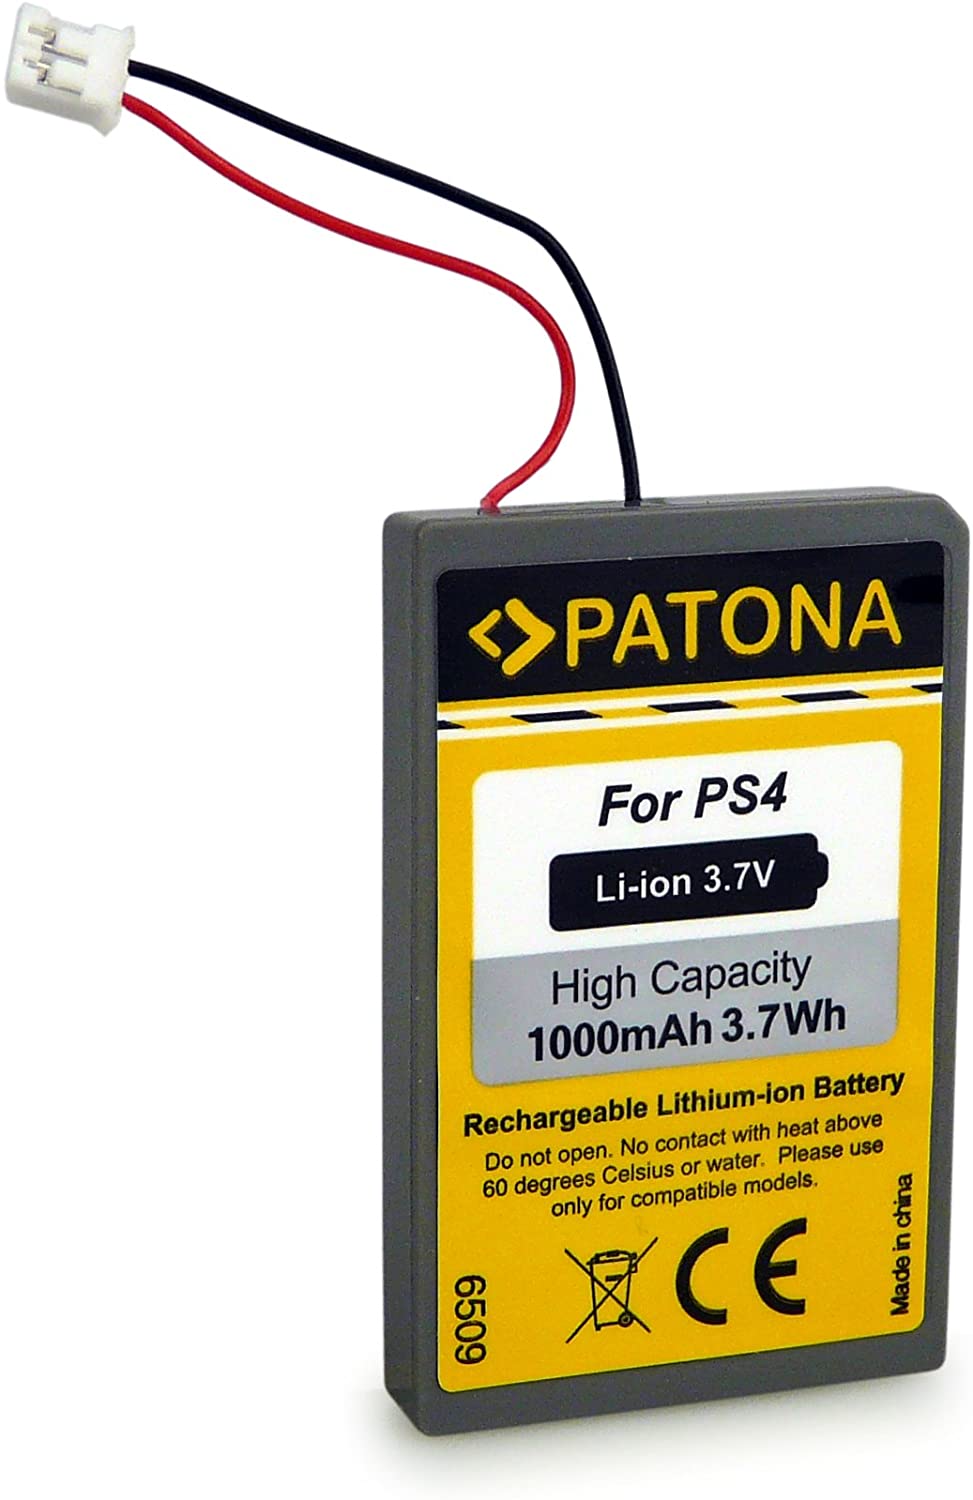 Batterie Li-ion 700mAh manette Dualshock Sony PS4 - Console de jeux